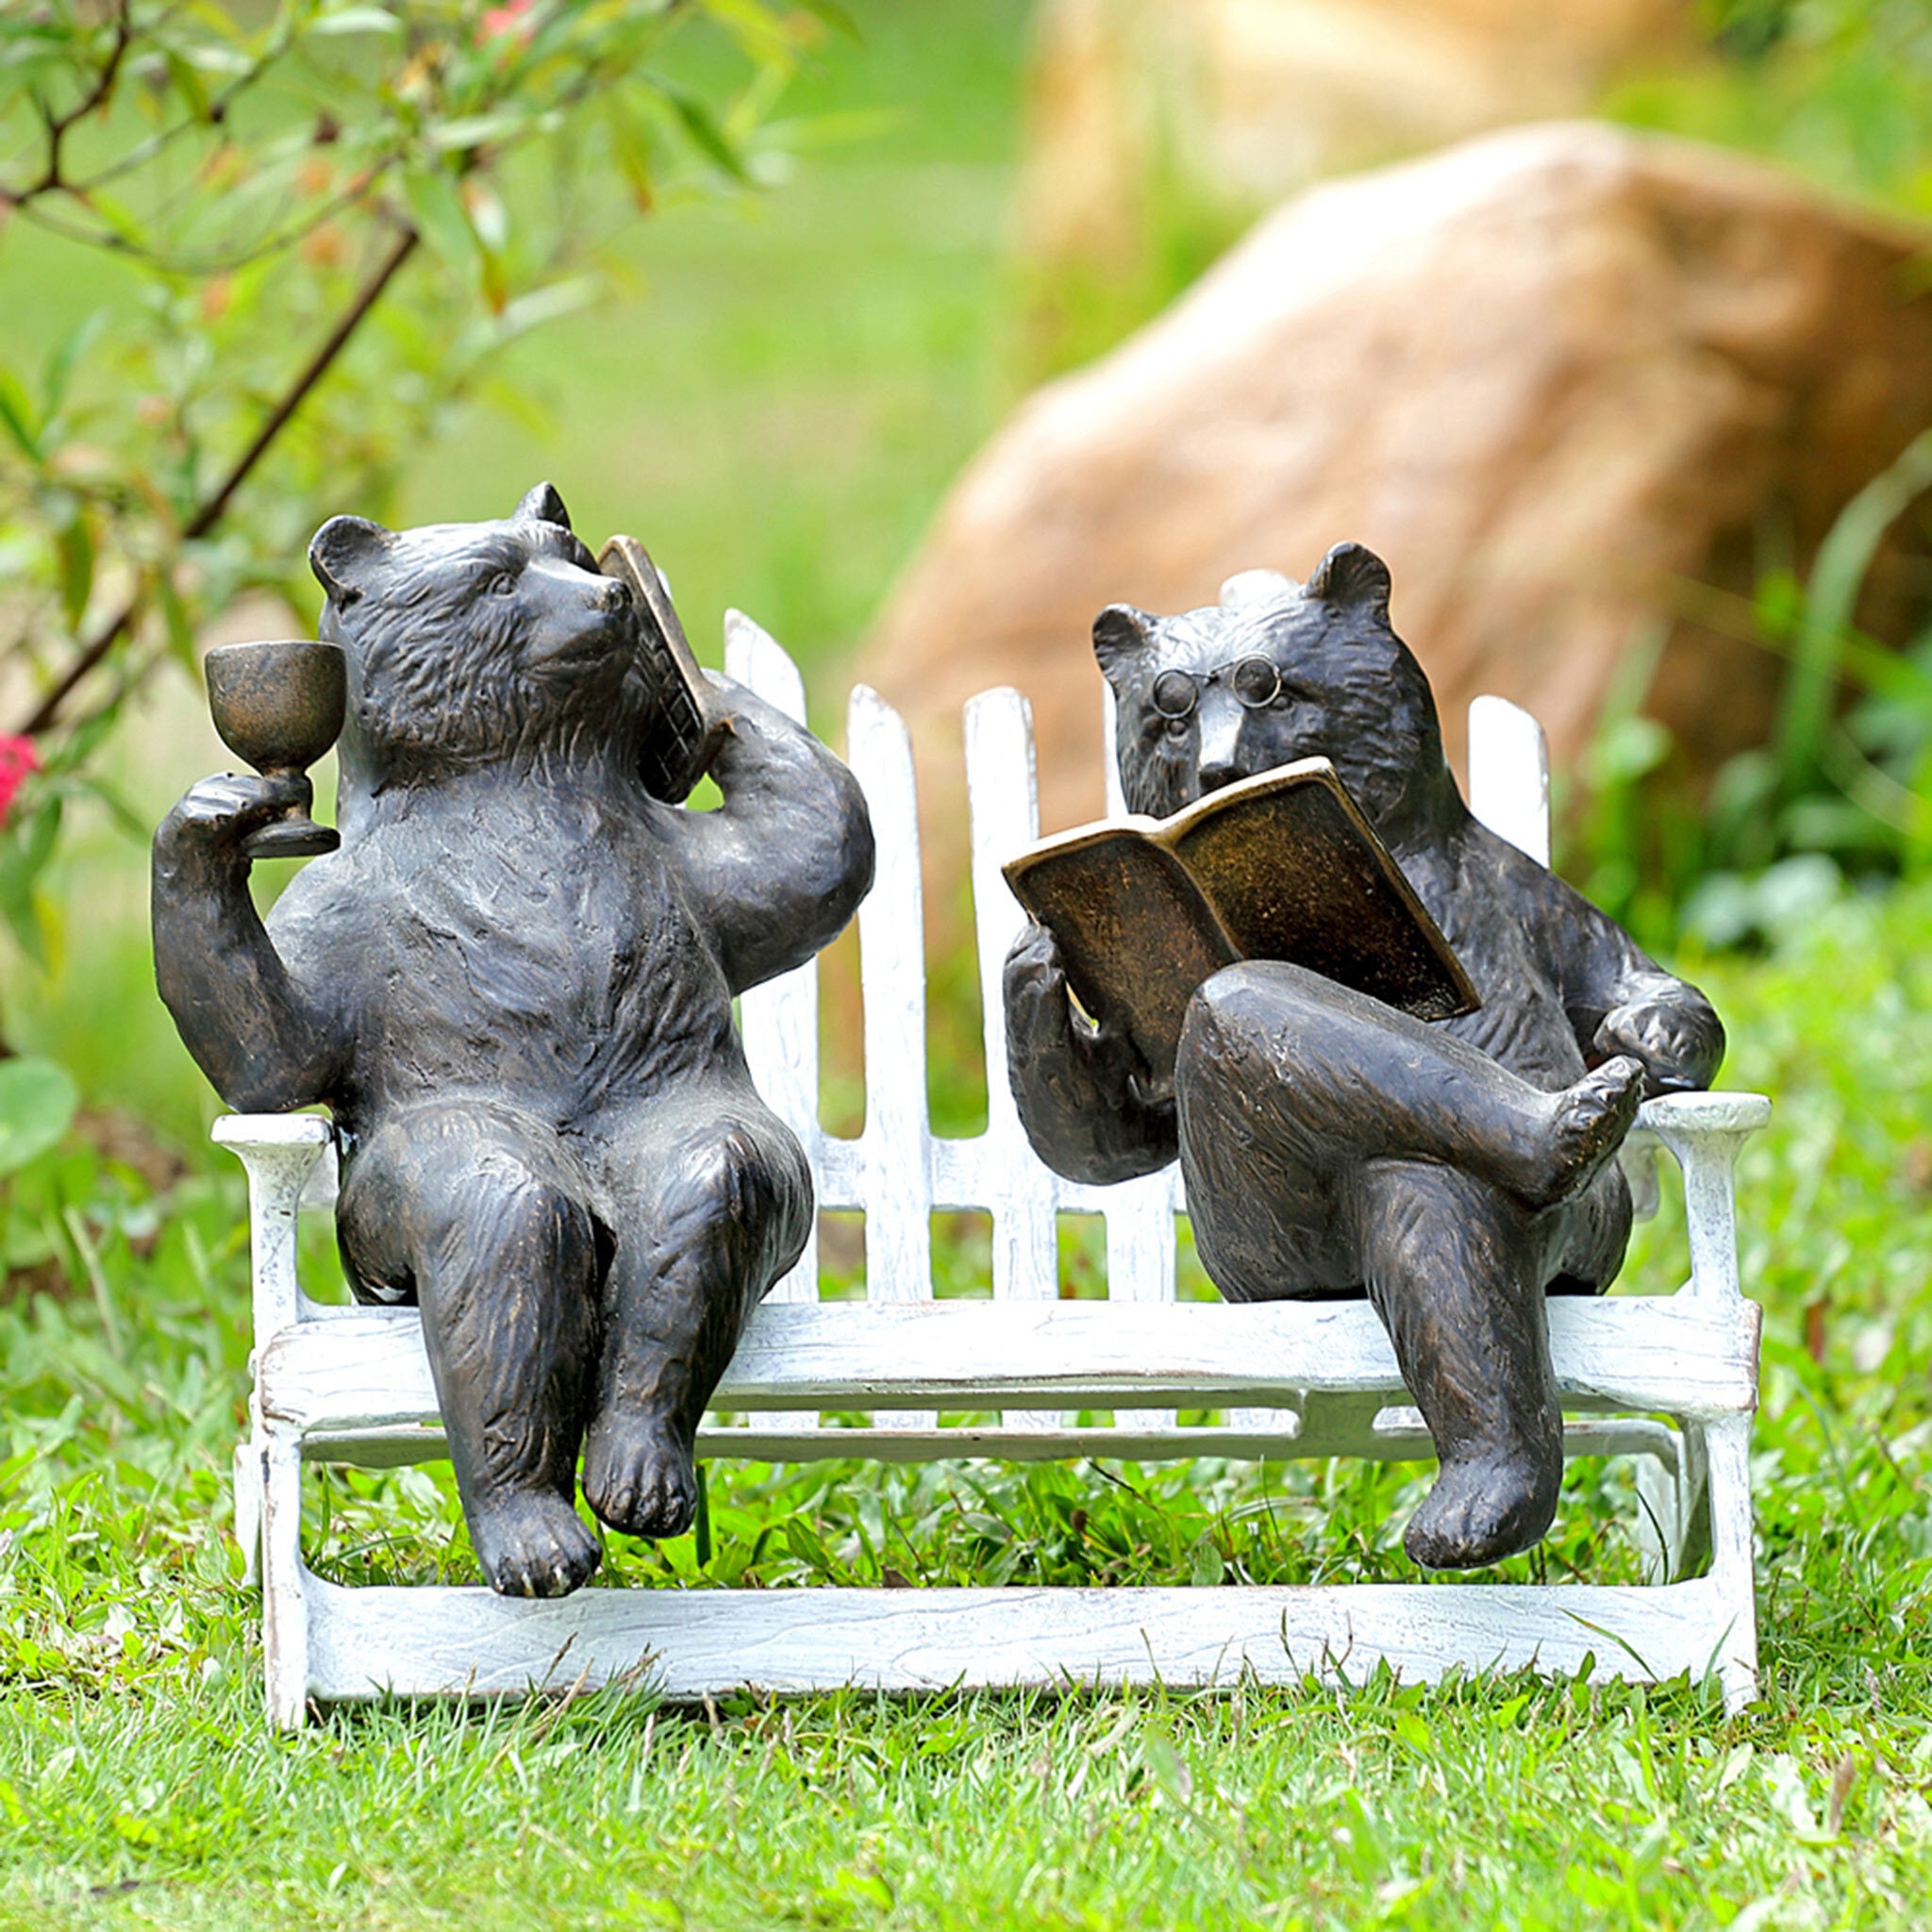 Hipster Bears on Bench Garden Sculpture #2